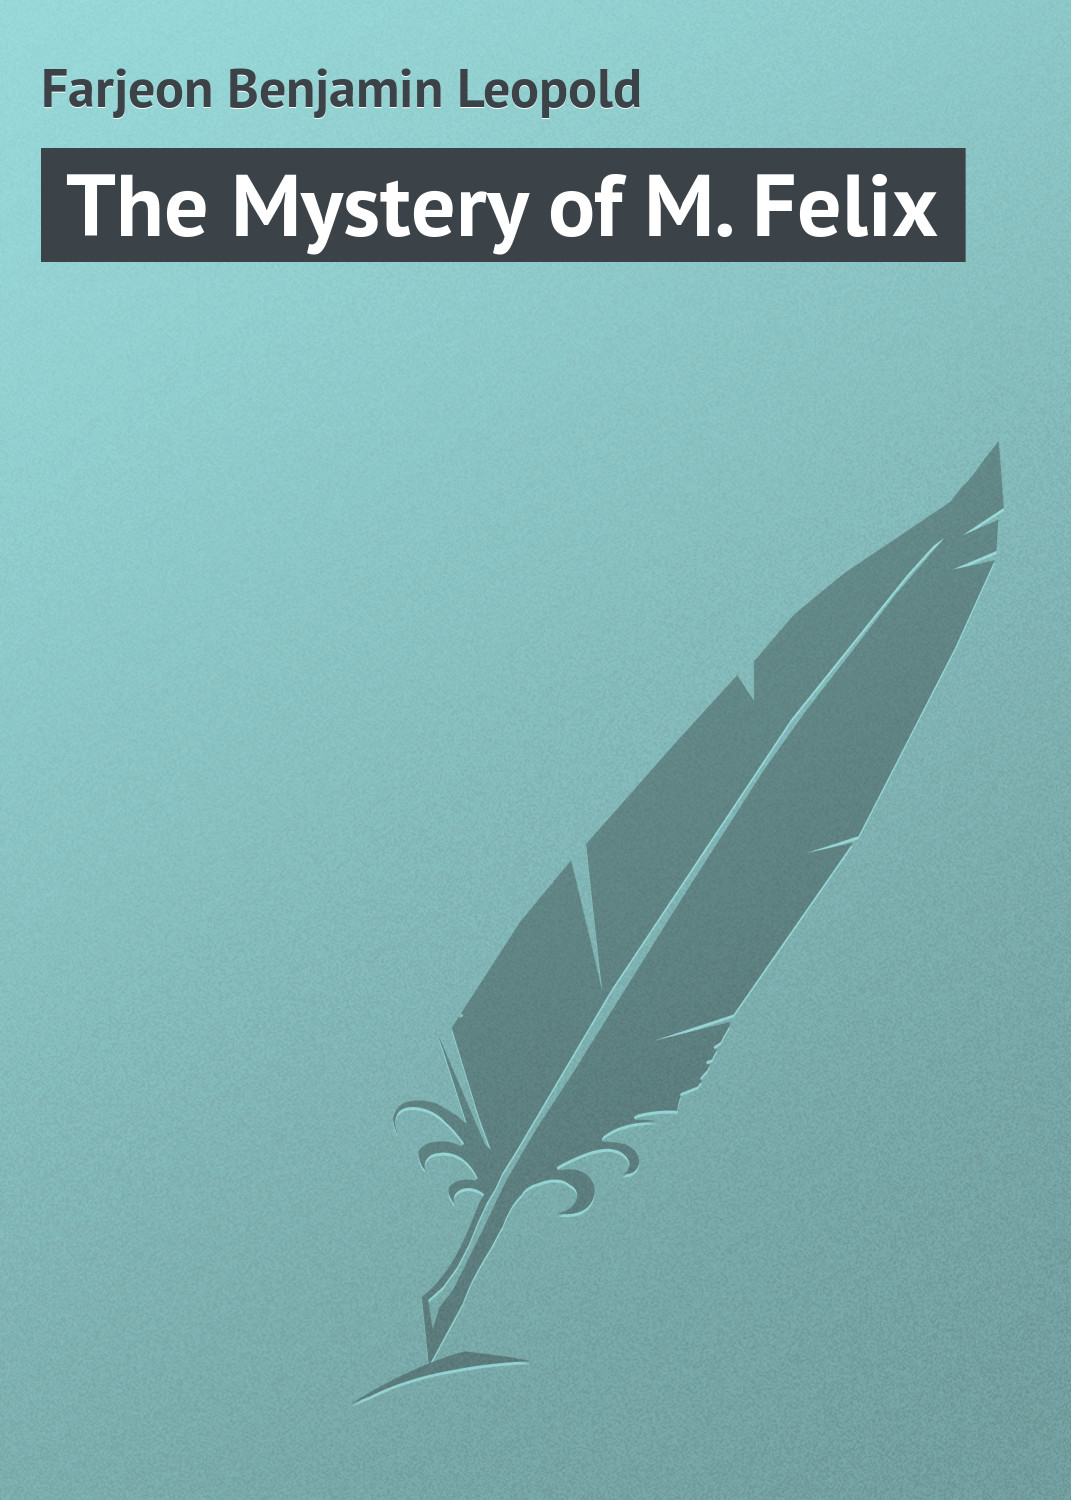 Книга The Mystery of M. Felix из серии , созданная Benjamin Farjeon, может относится к жанру Зарубежная классика, Иностранные языки. Стоимость электронной книги The Mystery of M. Felix с идентификатором 23169651 составляет 5.99 руб.